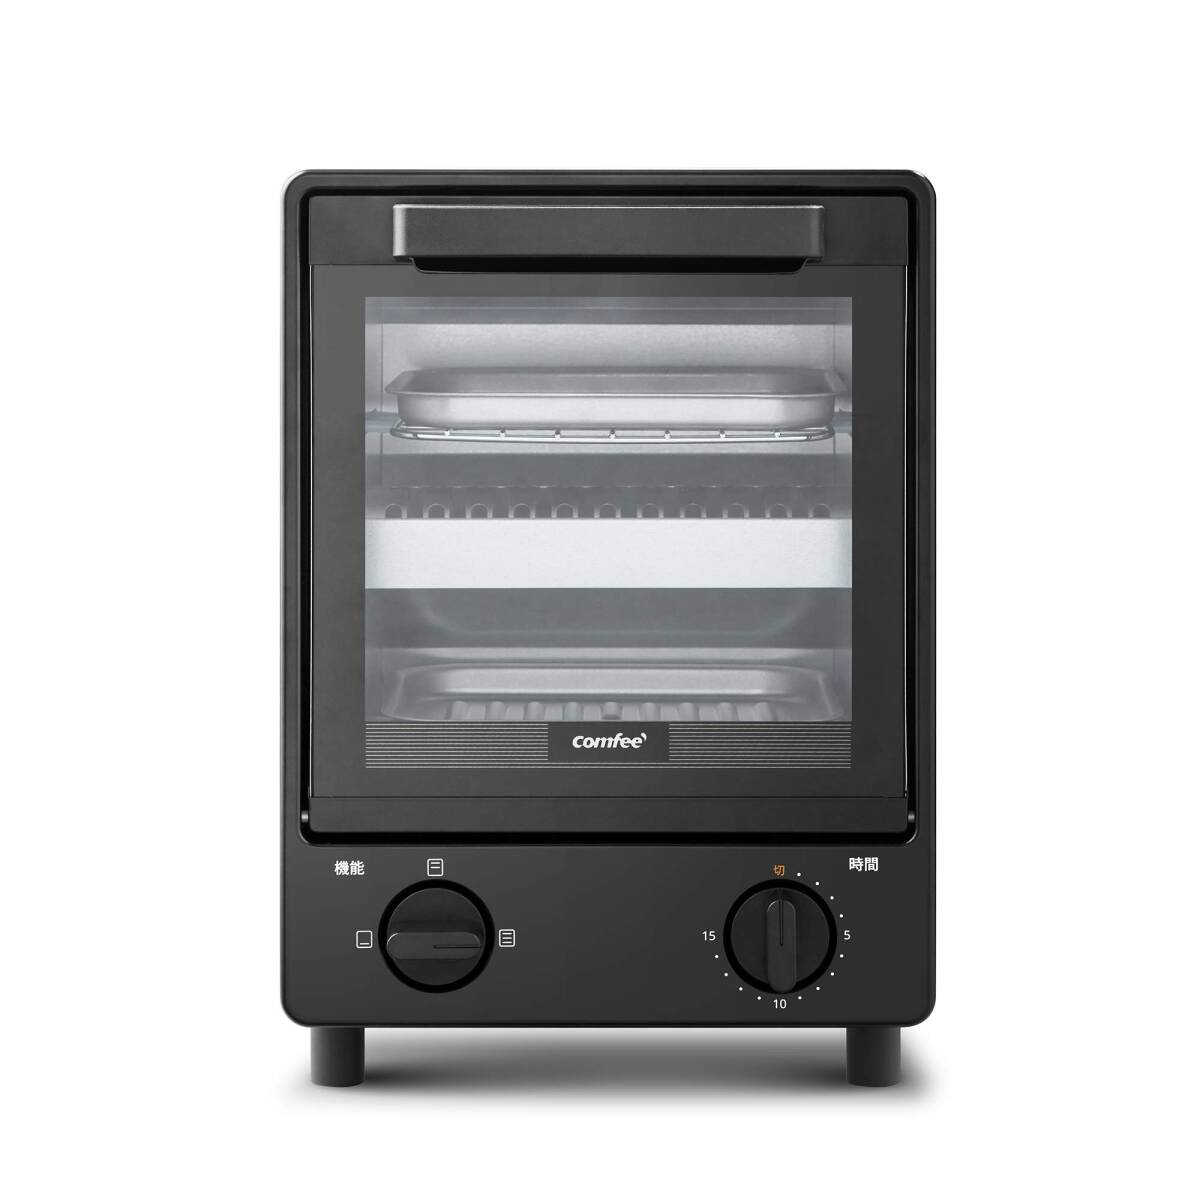 COMFEE' オーブントースター 庫内上下2段構造 2つの同時調理にできる 3段階温度調節 15分タイマー 焼きムラ抑え スライドオープンドア_画像2